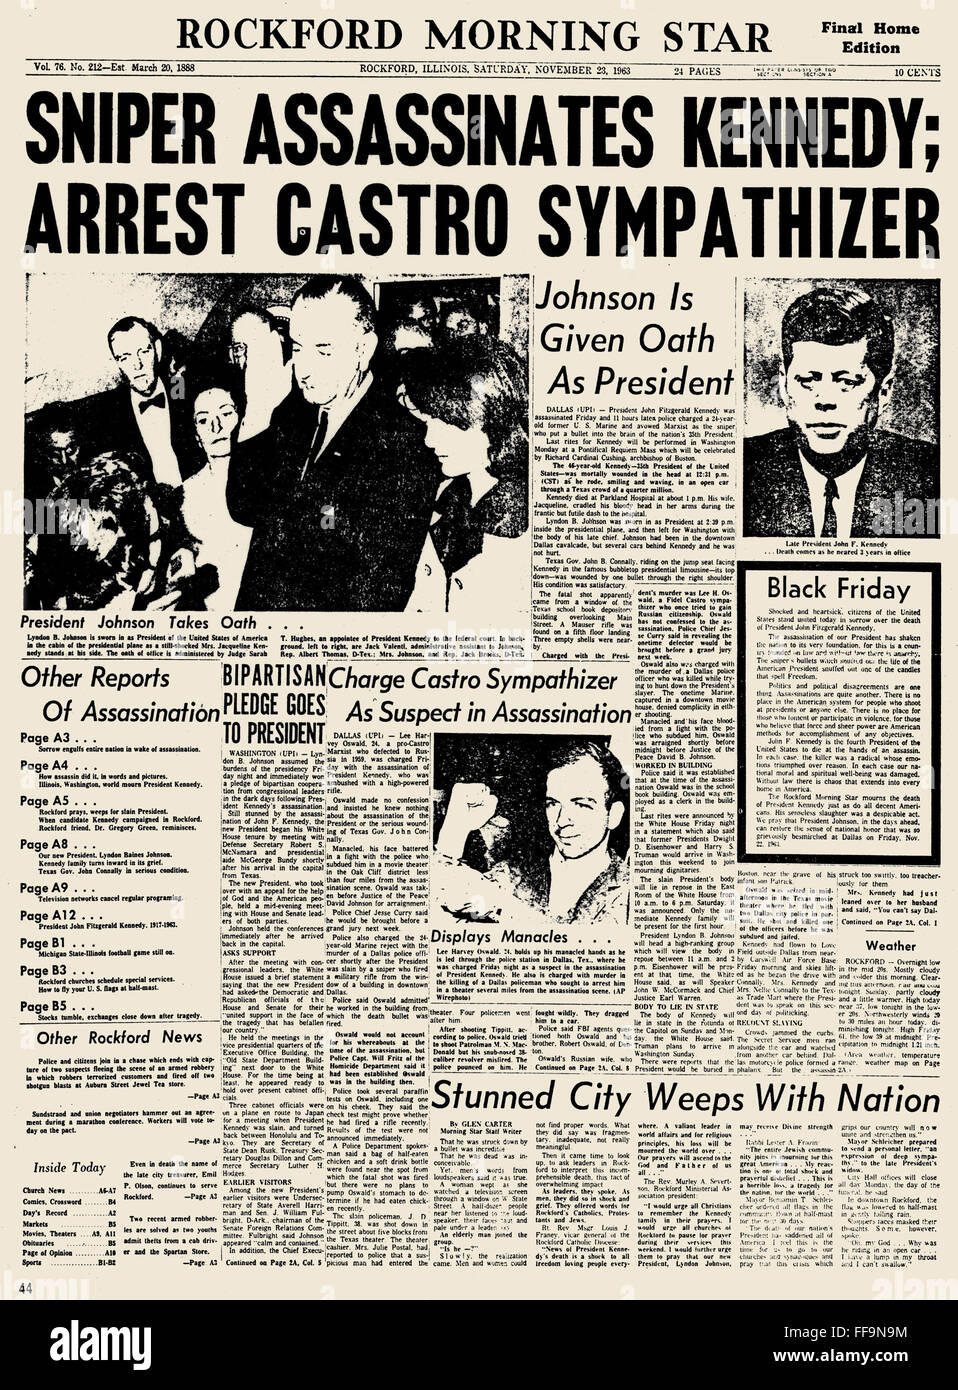 KENNEDY (1917-1963). /n35th Präsident der Vereinigten Staaten. Die Schlagzeile der "Rockford Morgenstern" (Rockford, Illinois) des 23. November 1963 Ankündigung der Ermordung von Präsident Kennedy. Stockfoto